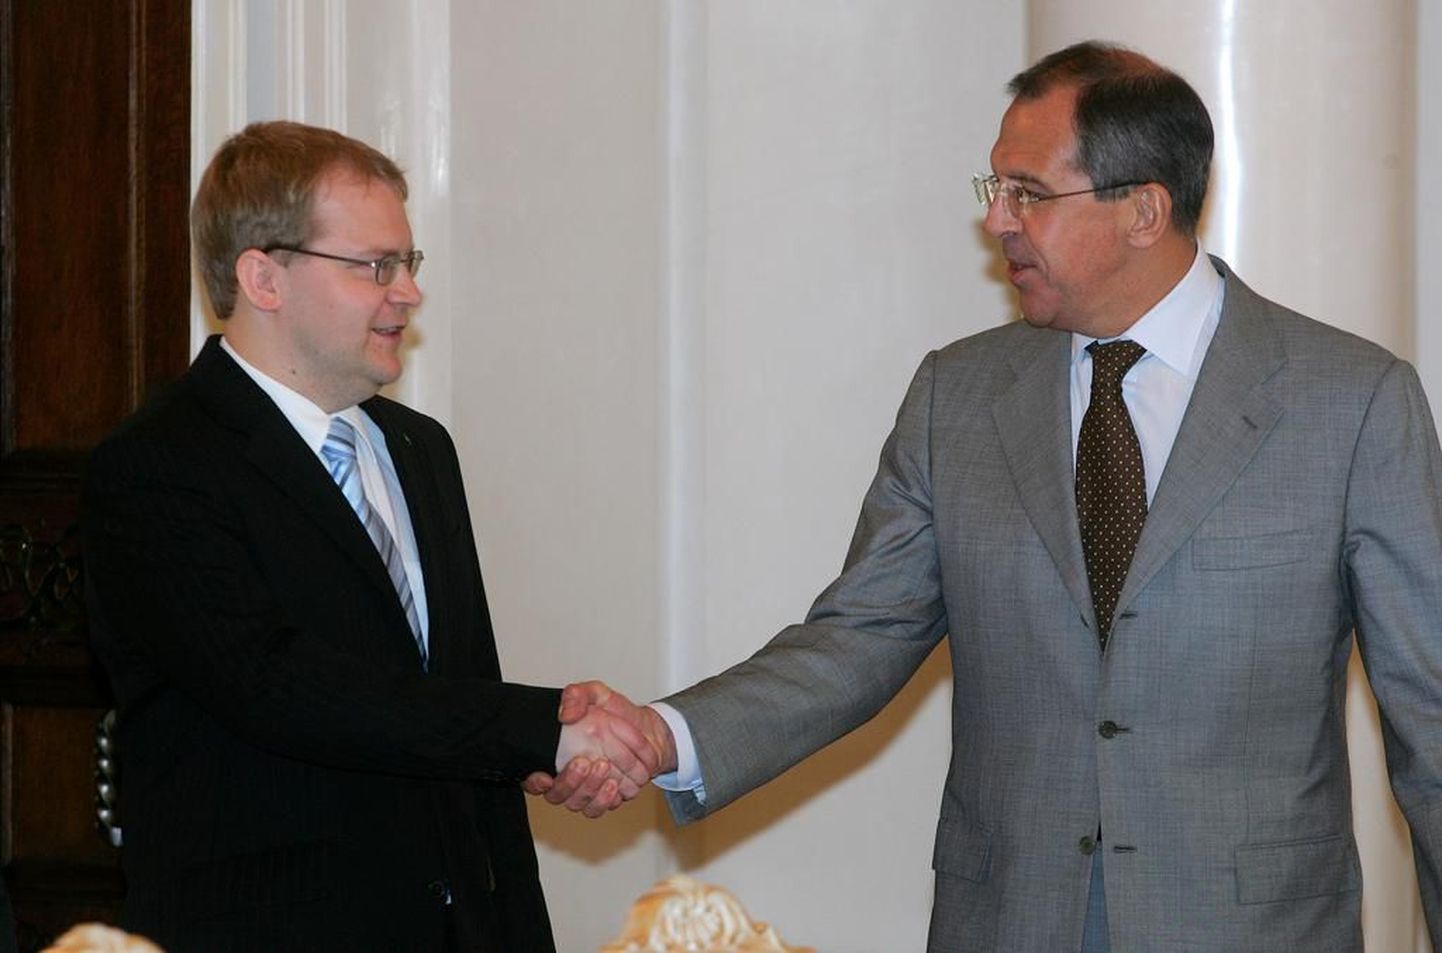 Esimest korda allkirjastasid välisminister Urmas Paet ja Vene välisminister Sergei Lavrov piirilepped Moskvas 18. mail 2005.